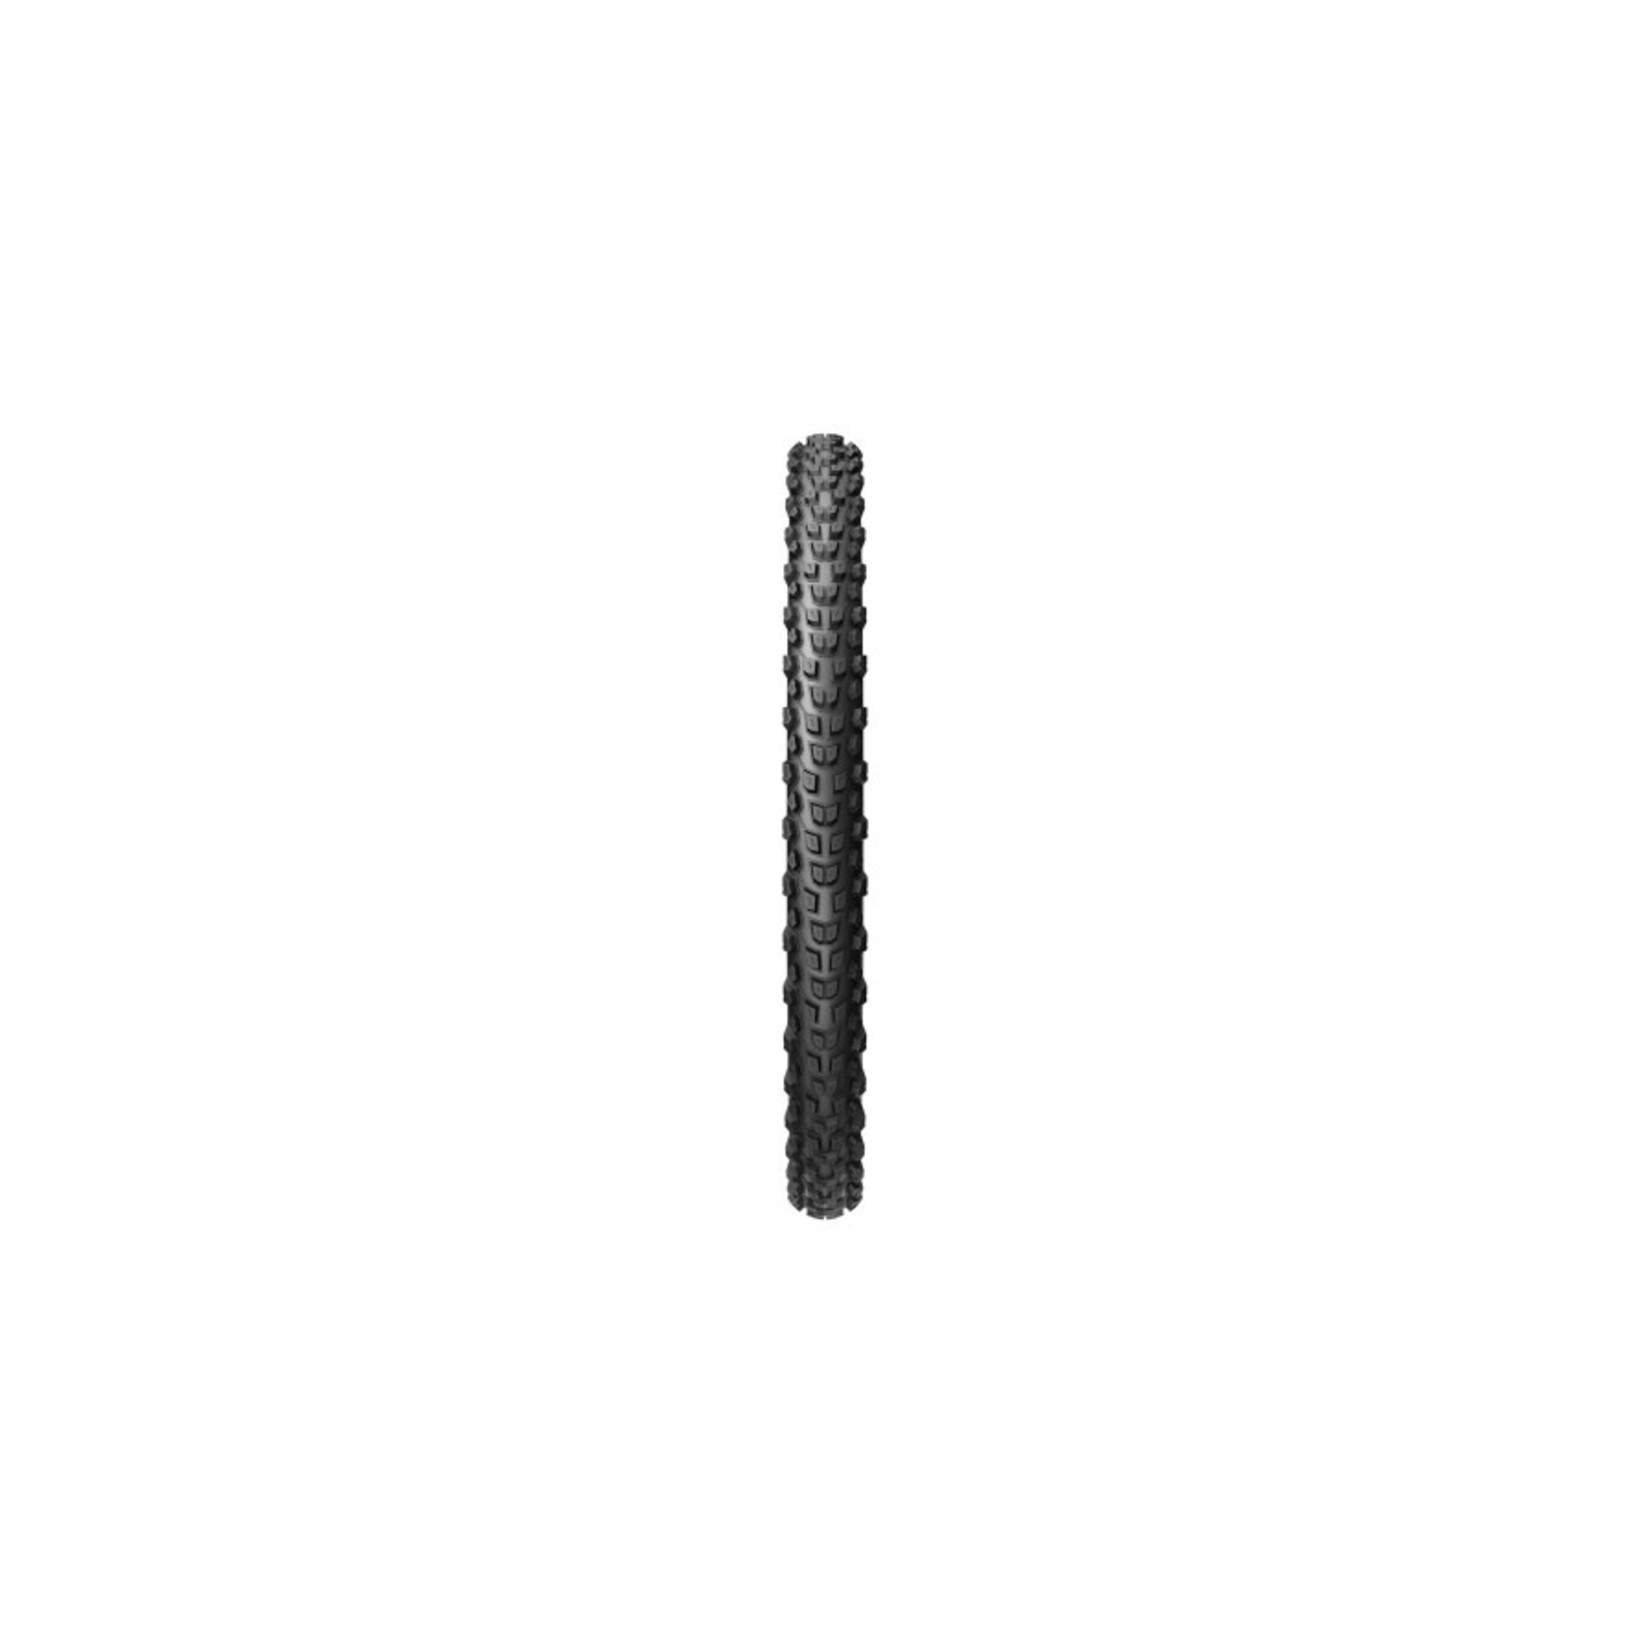 Pirelli SCORPION TRAIL S BLACK ProWall / 29"x2.40" / 950g